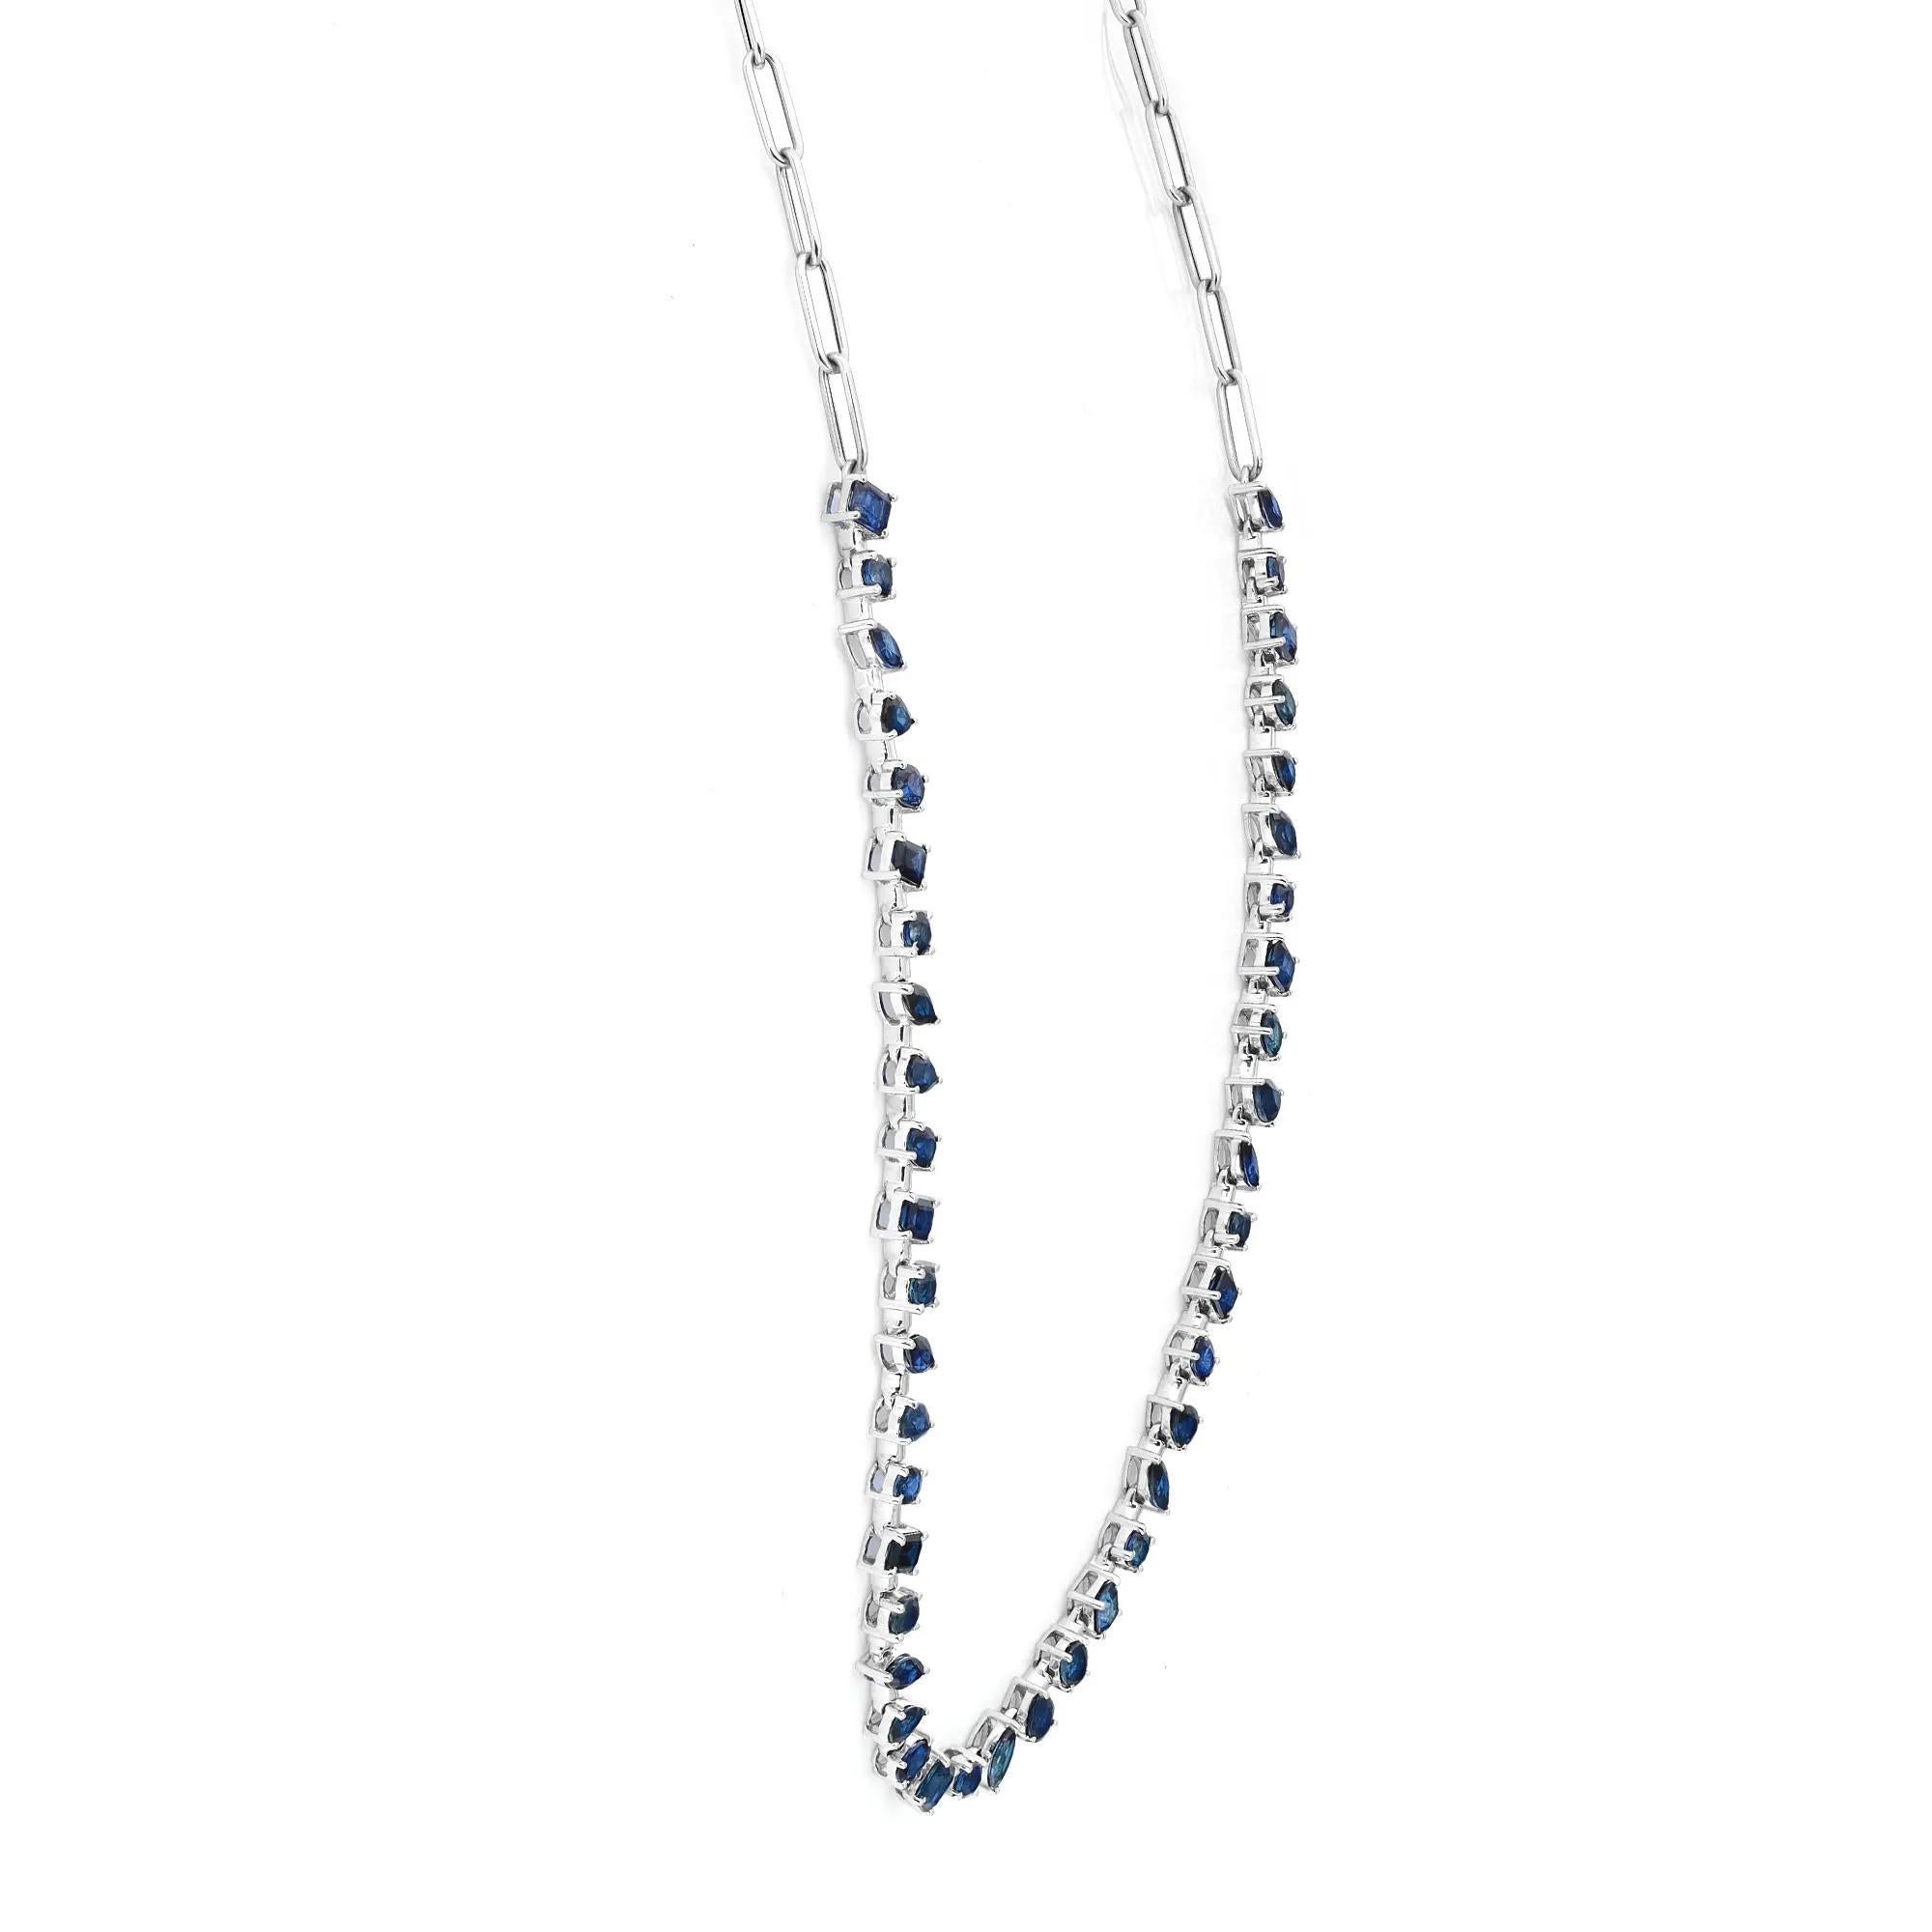 Zeigen Sie Ihren einzigartigen Stil mit dieser wunderschönen Tennis-Halskette aus blauen Saphiren in mehreren Formen. Dieses Collier besteht aus 43 blauen Saphiren in Marquise-, Rund-, Birnen-, Oval- und Smaragdform, die in gleichmäßigen Abständen